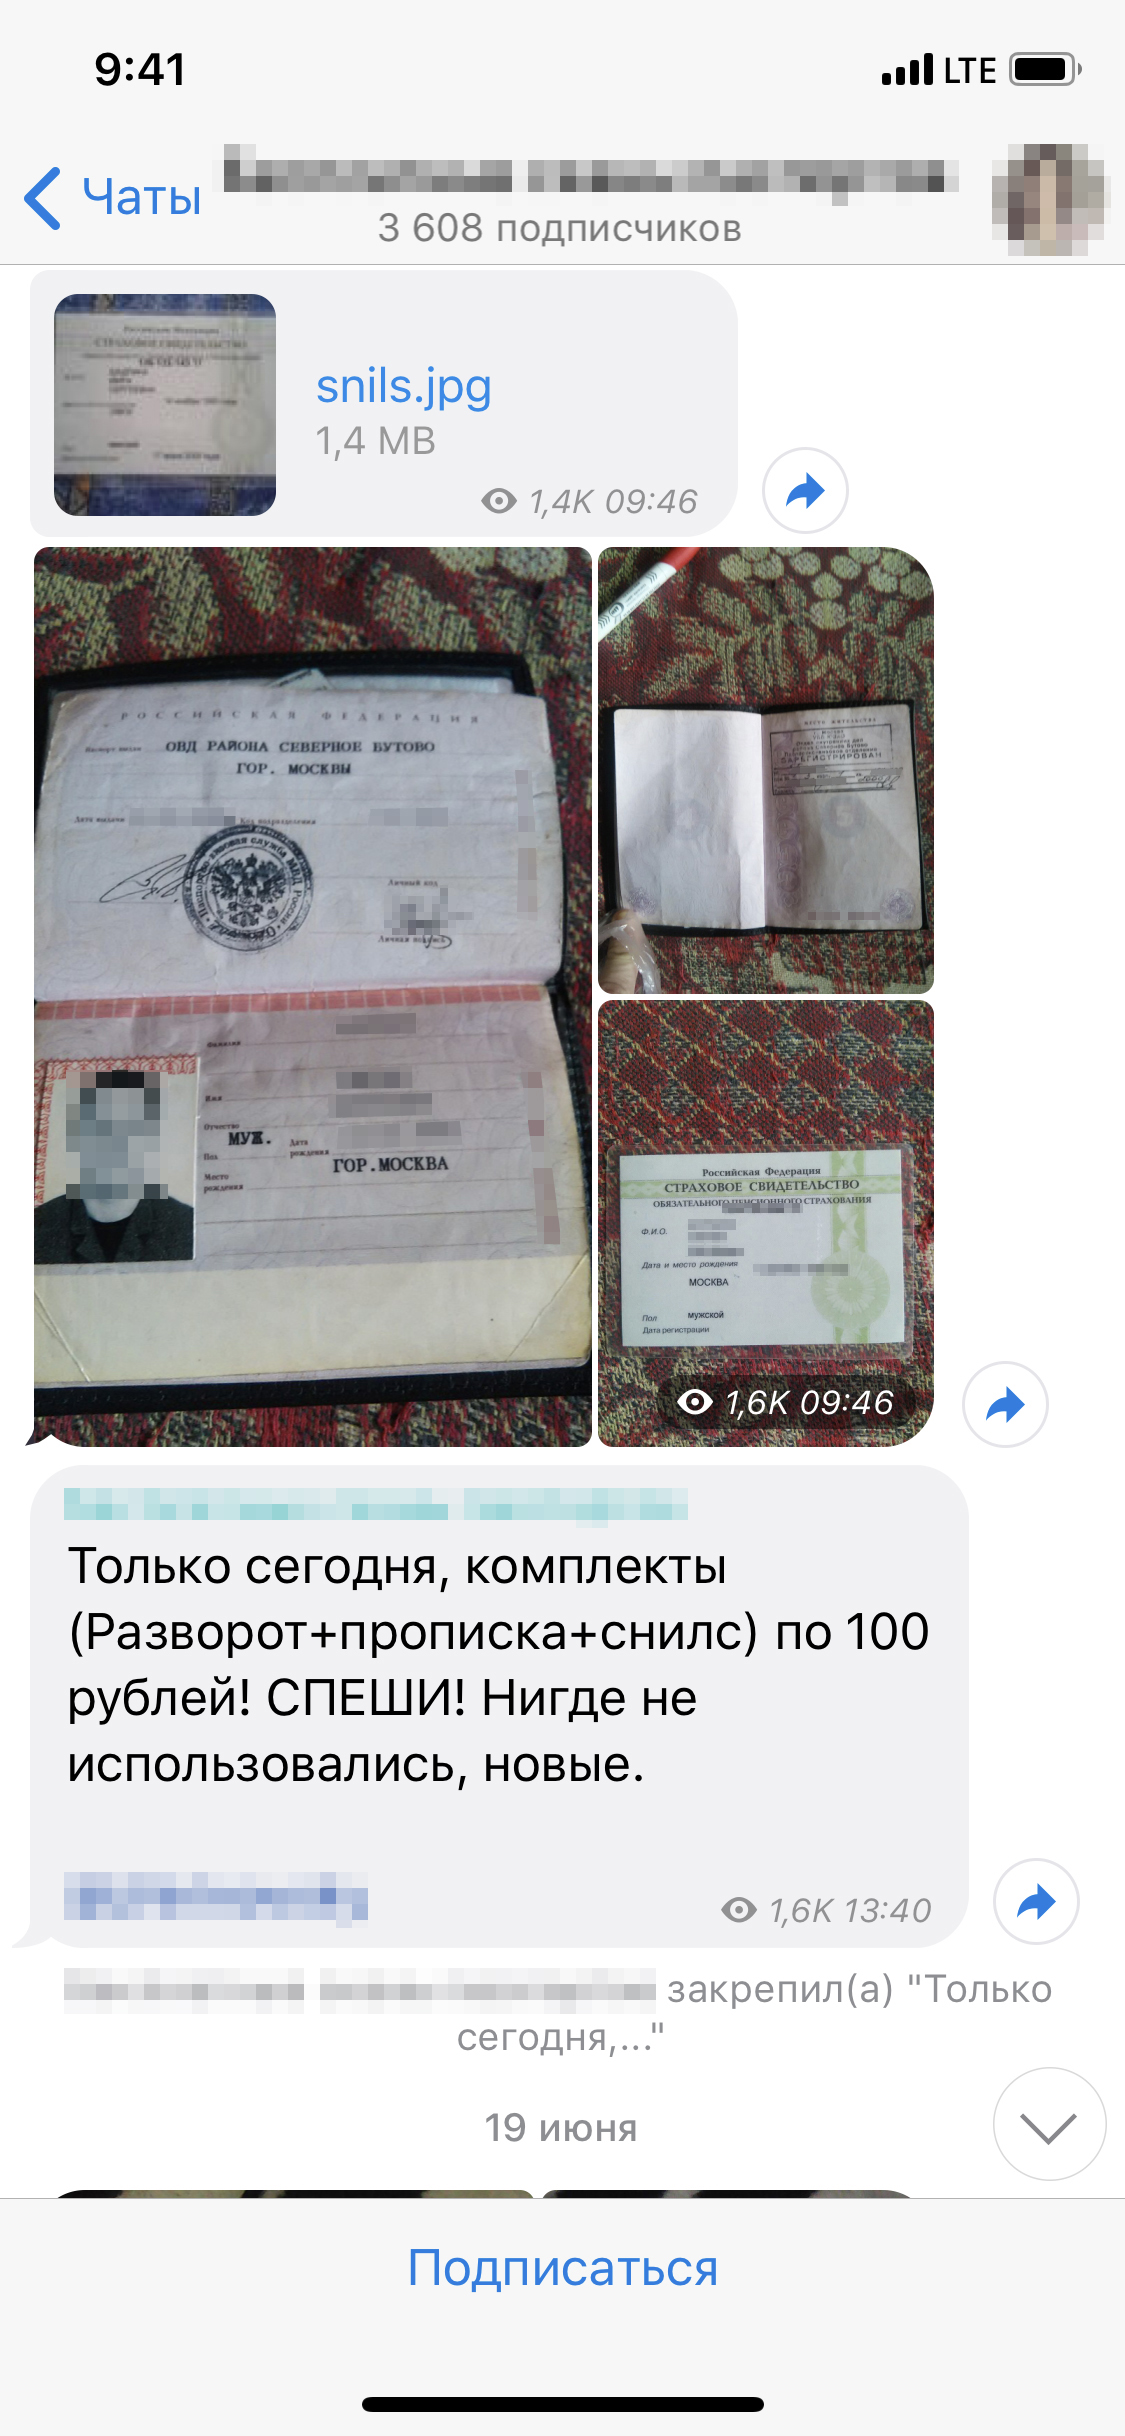 Один из каналов в Телеграме, где можно купить фотографии чужих документов — паспортов, СНИЛС